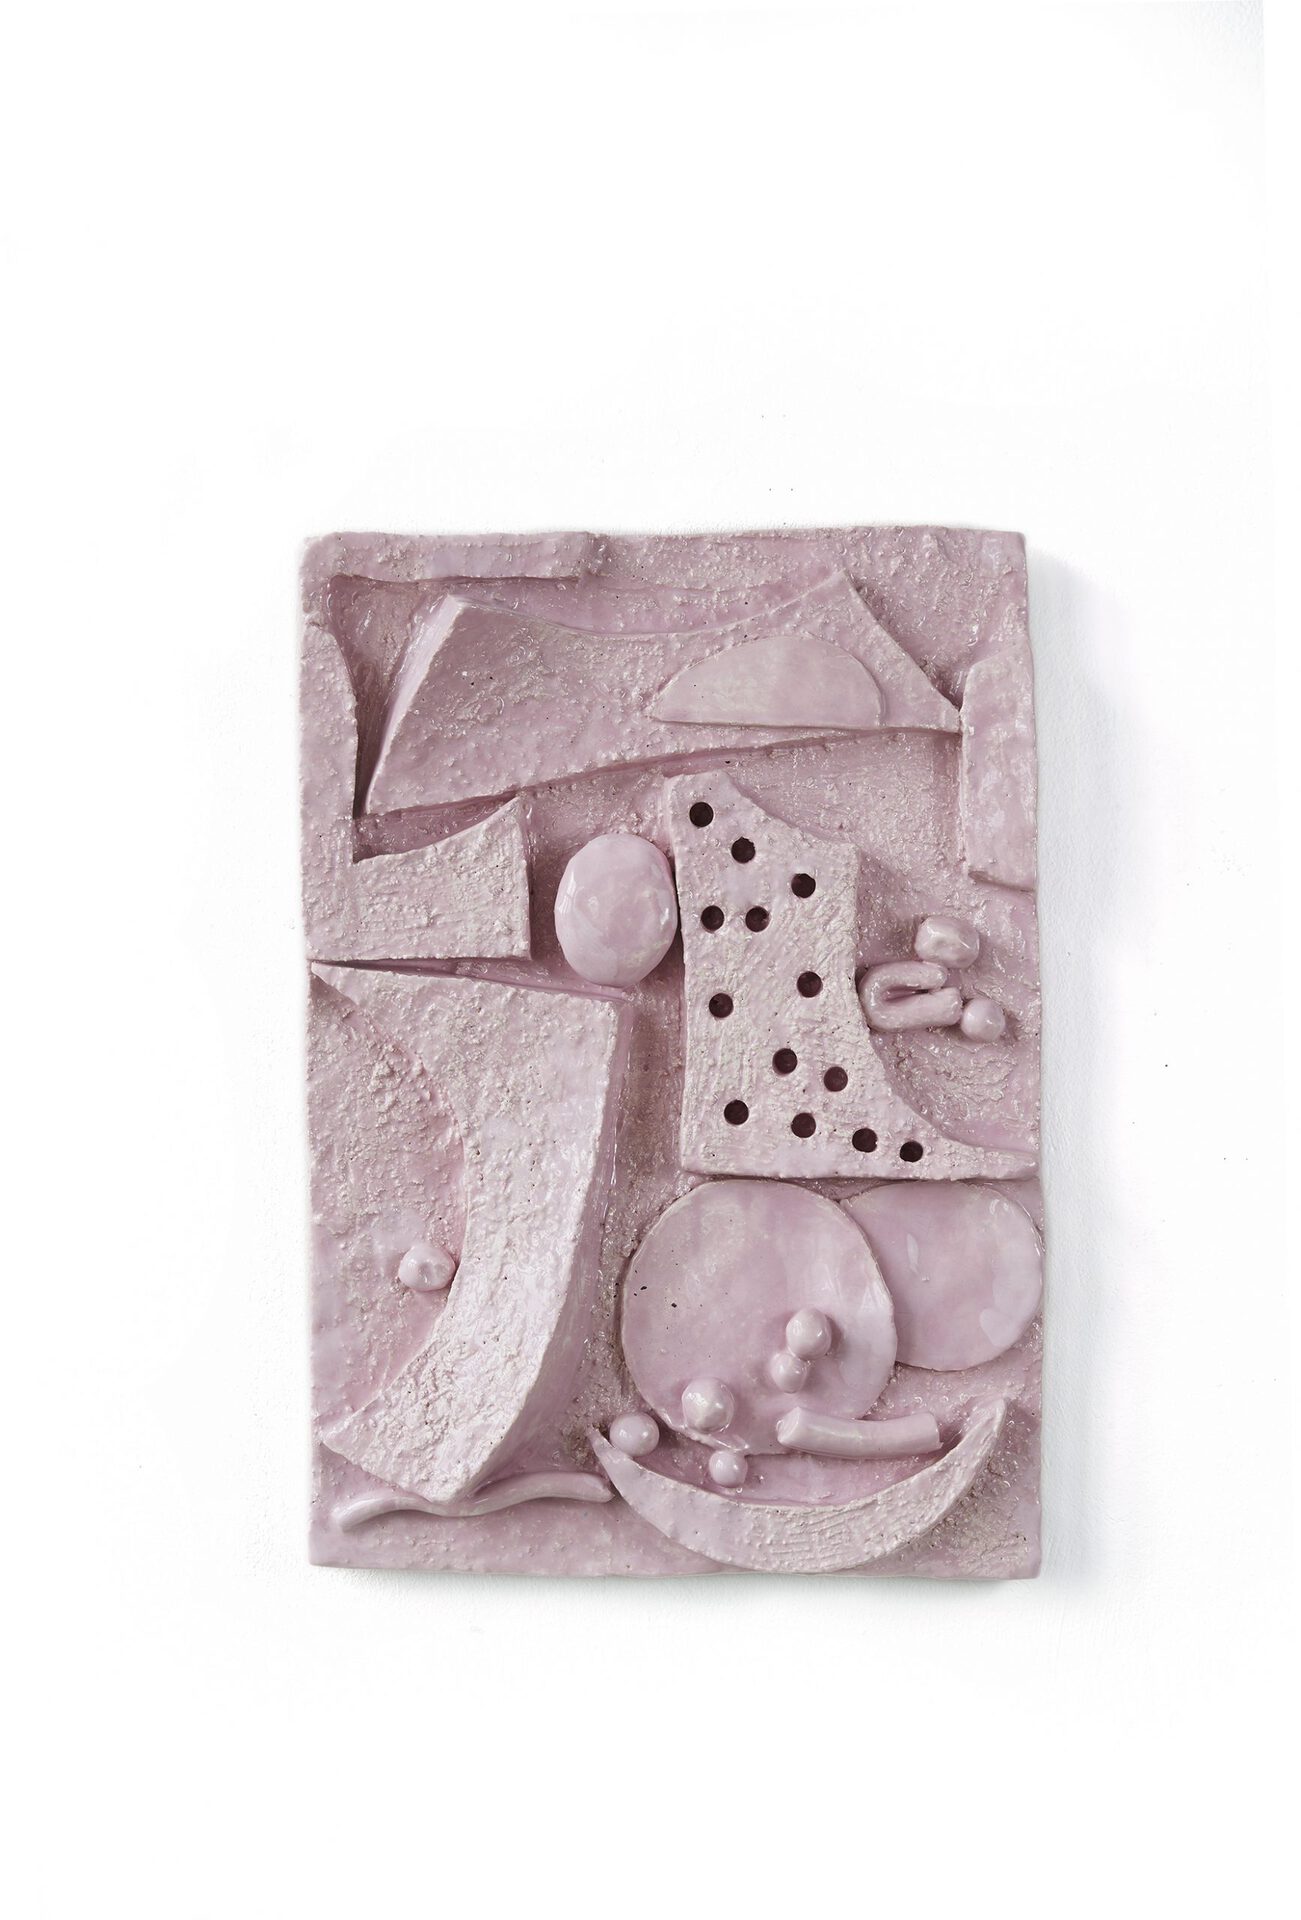 Suse Bauer, Wiedereintritt, 2019, glazed ceramic